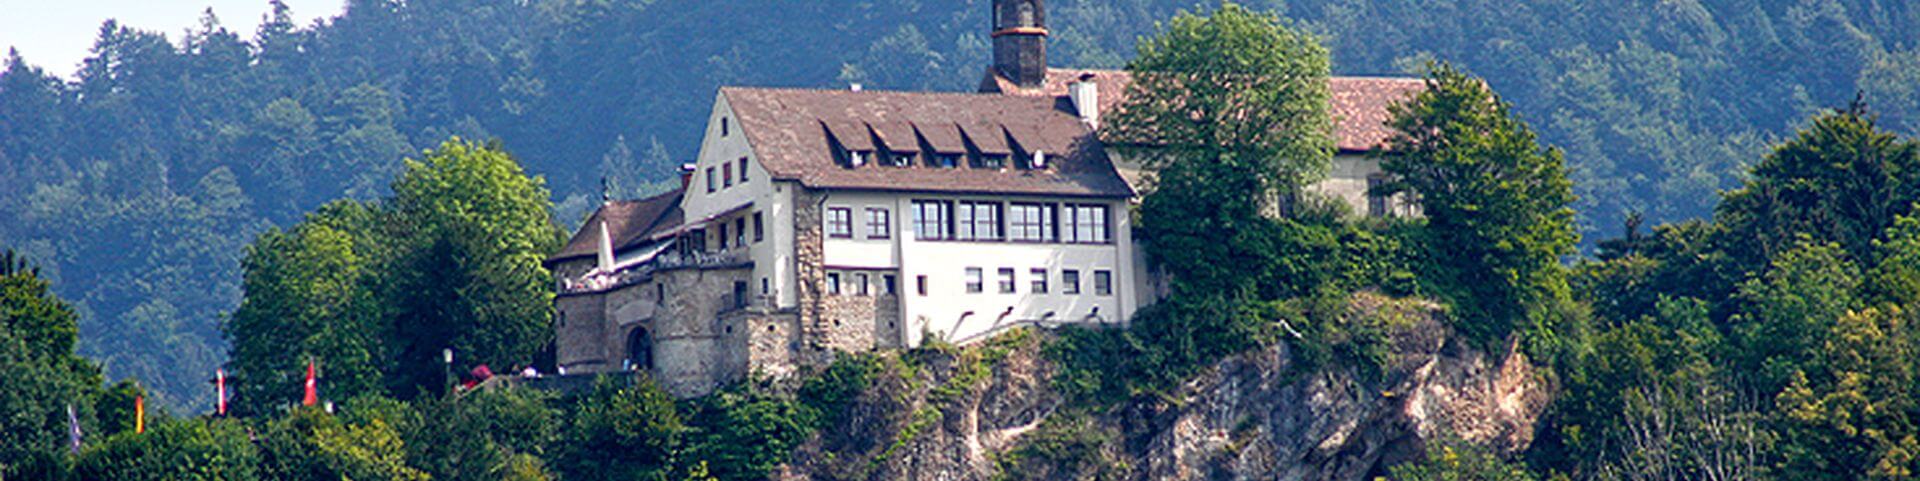 Titelbild von Lehrbetrieb Burgrestaurant Gebhardsberg auf Lehrlingsportal.at